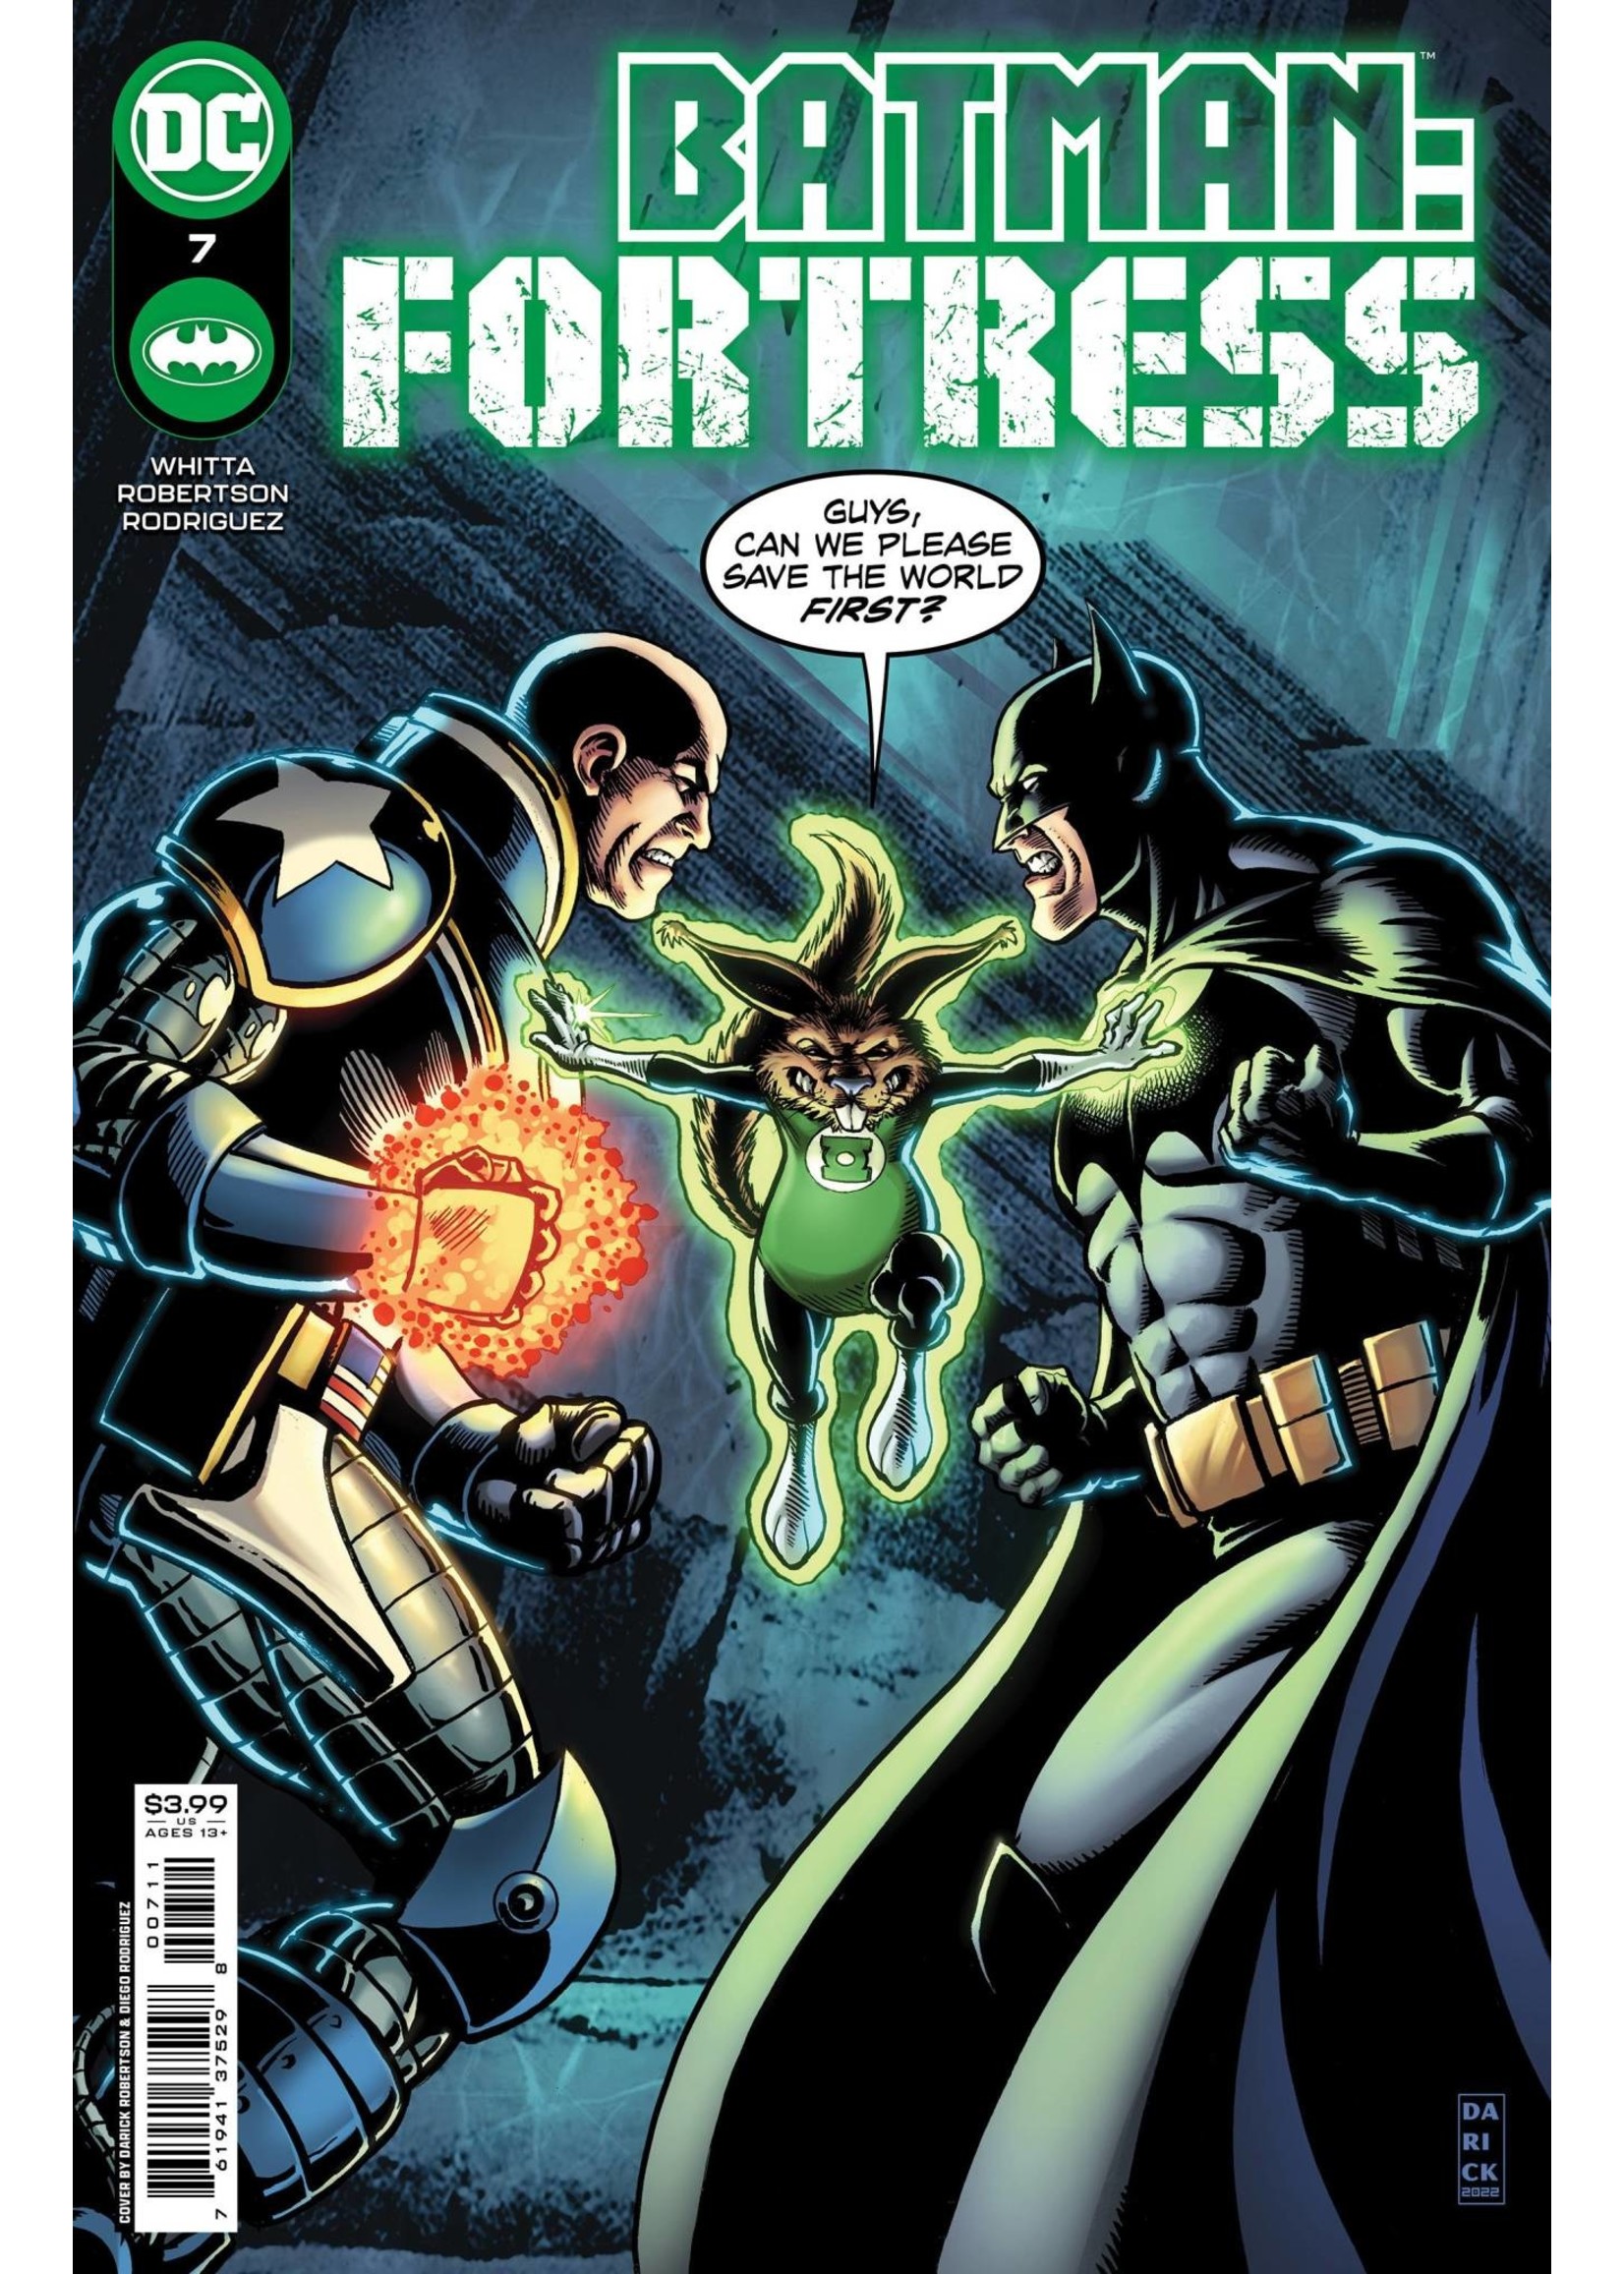 DC COMICS BATMAN FORTRESS #7 (OF 8) CVR A